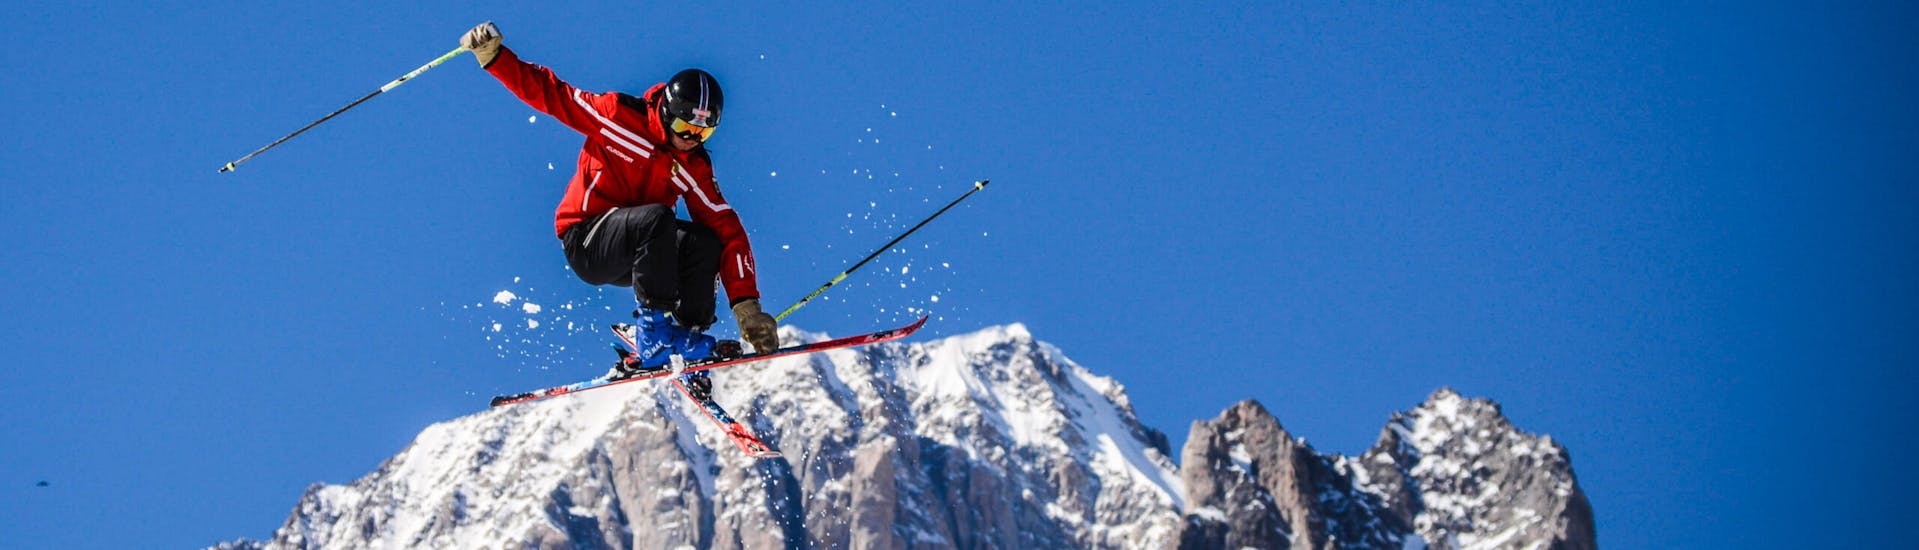 Cours de ski Adultes dès 13 ans pour Tous niveaux.